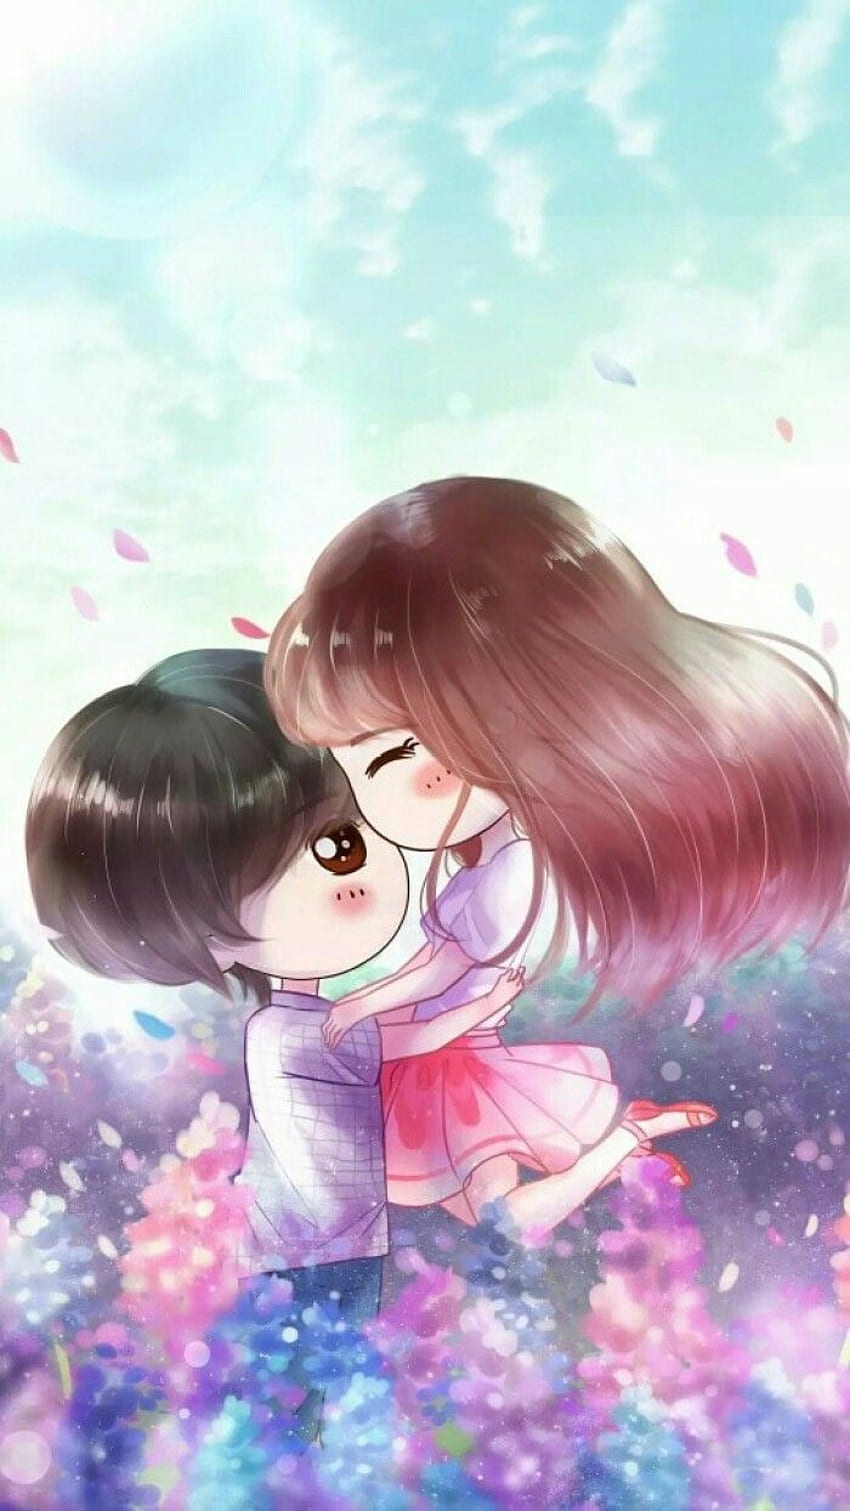 Rahmah Rahmah on Drawings. Anime art beautiful, Cute couple , Cute love, Happy Anime Couples HD phone wallpaper